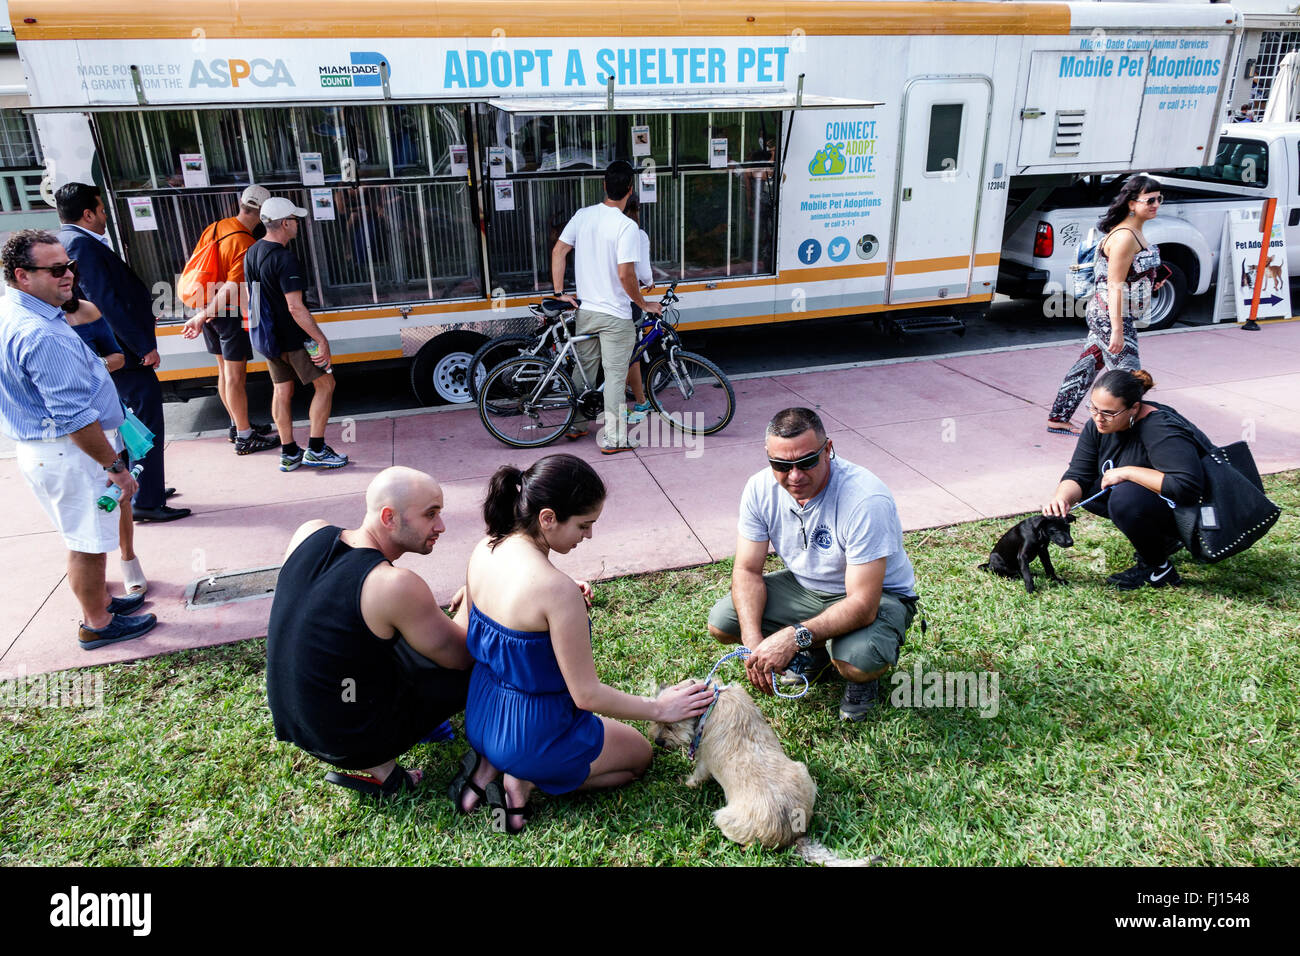 Miami Beach Florida, mobil Adoptieren Tierheim Haustier, Anhänger, Annahme, Erwachsene, Erwachsene, Mann Männer männlich, Frau weibliche Frauen, Paar, suchen, ASPCA, Hund, Hunde, FL1601 Stockfoto